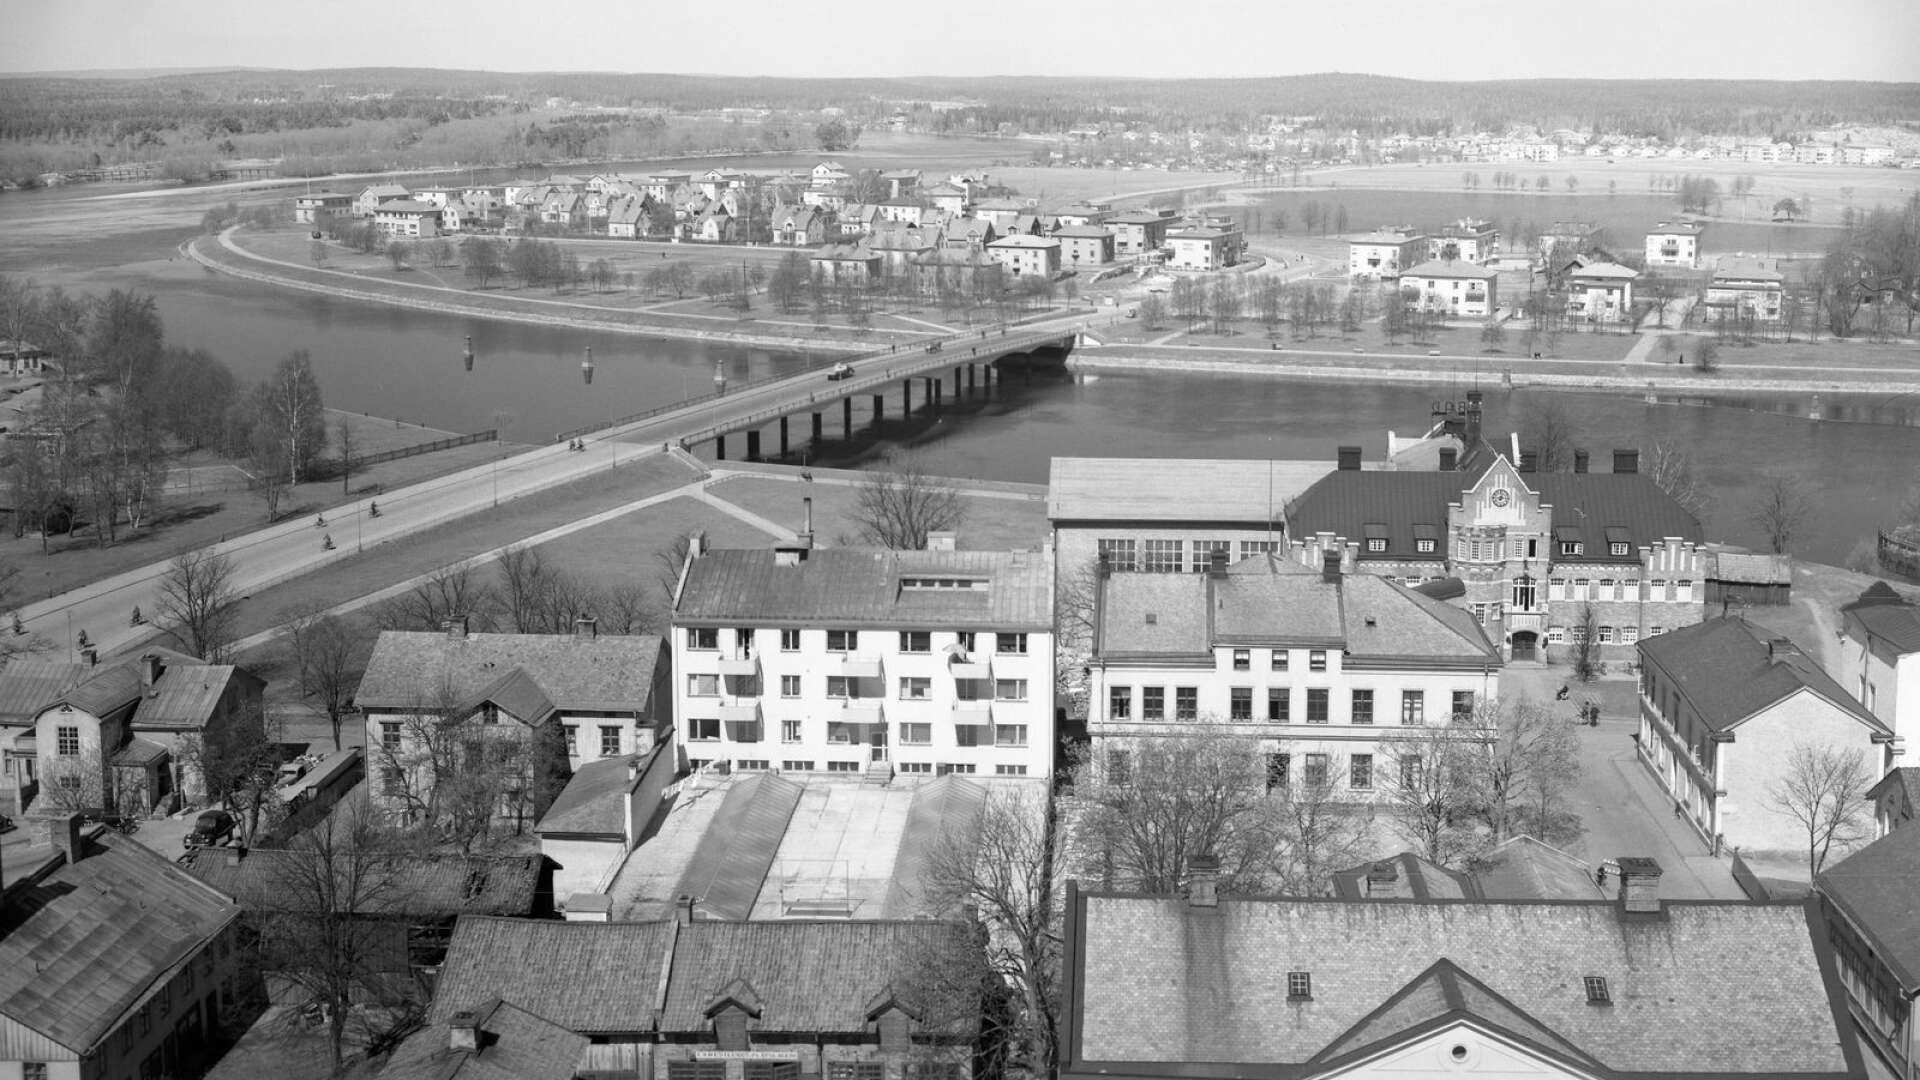 Norr, 1941. Tingvallabron invigd av kung Gustav V i juli 1935. Under 1930-talet växte Sundsta som bostadsområde fram allt mer. Funkishusen satte sin prägel på området. Koloniträdgårdarna låg där Älvkullegymnasiet i dag ligger. De flyttades till Södra Kroppkärr och skolan som först hette Karlstads nya tekniska läroverk invigdes 1959. Det gamla badhuset är fortfarande just ett badhus. 2001 byggs det om till bostadsrätter.